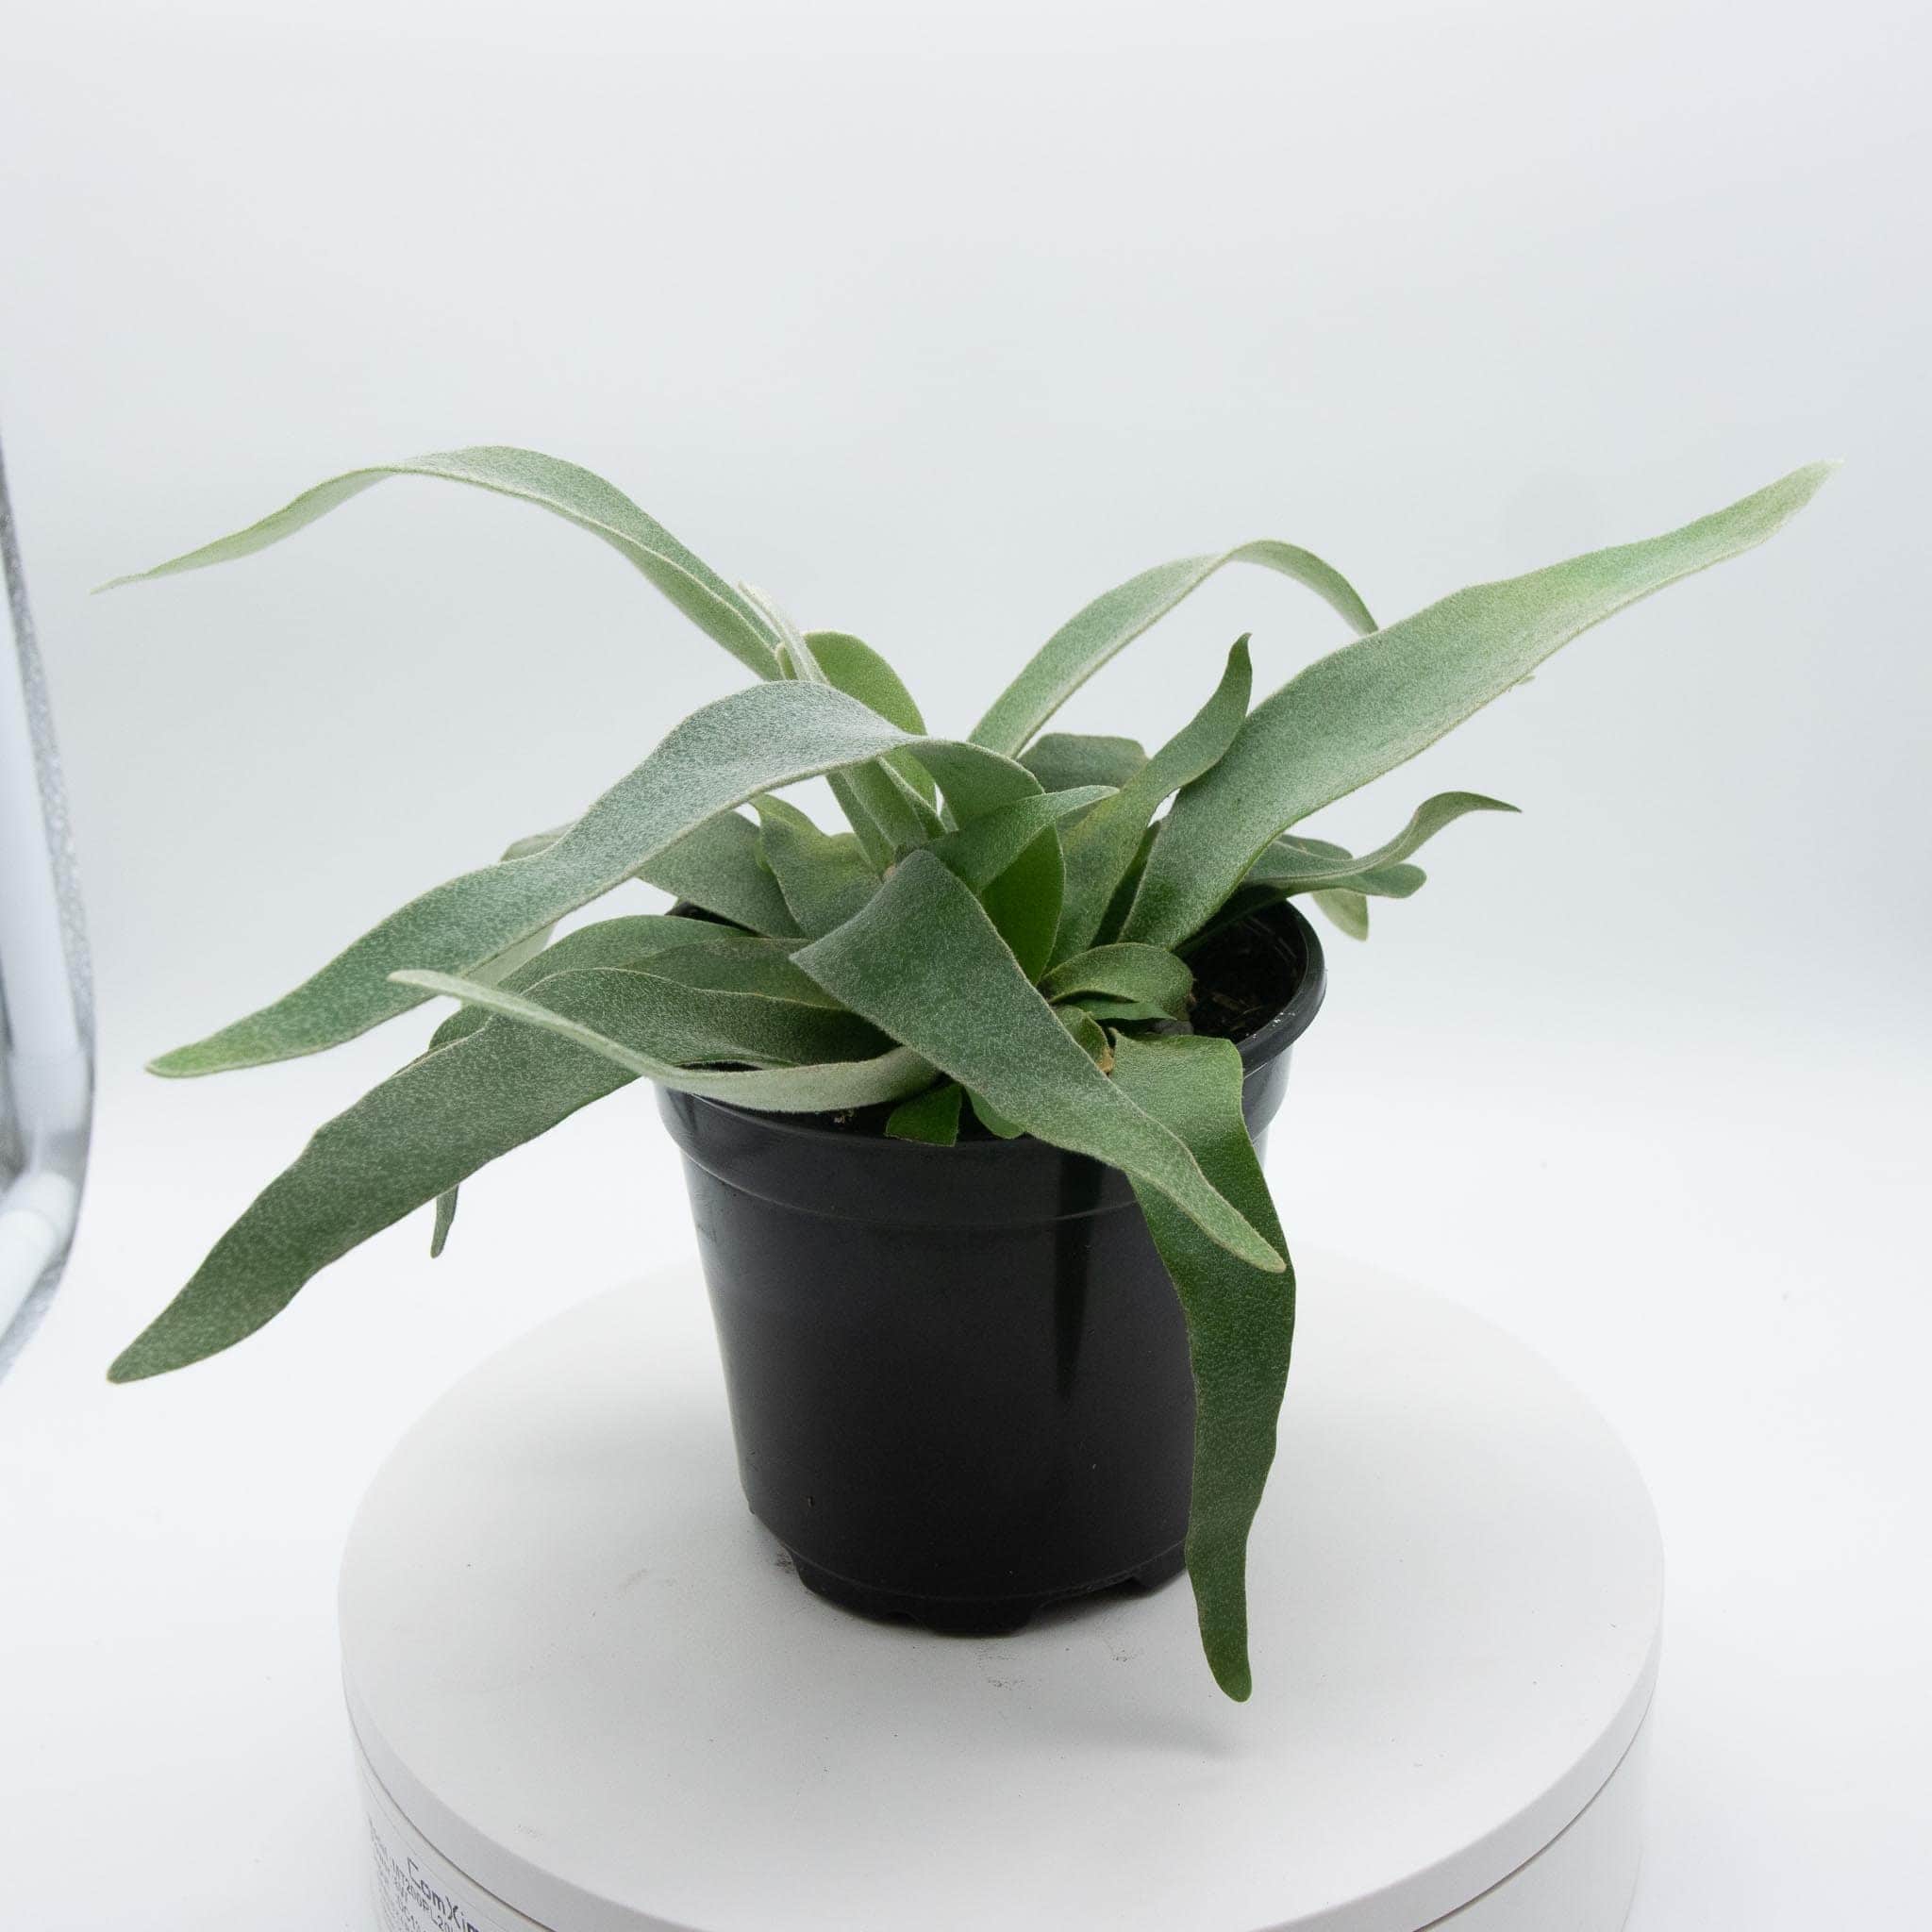 Gabriella Plants Fern 4" Fern Staghorn - platycerium veitchii ‘Lemoinei’